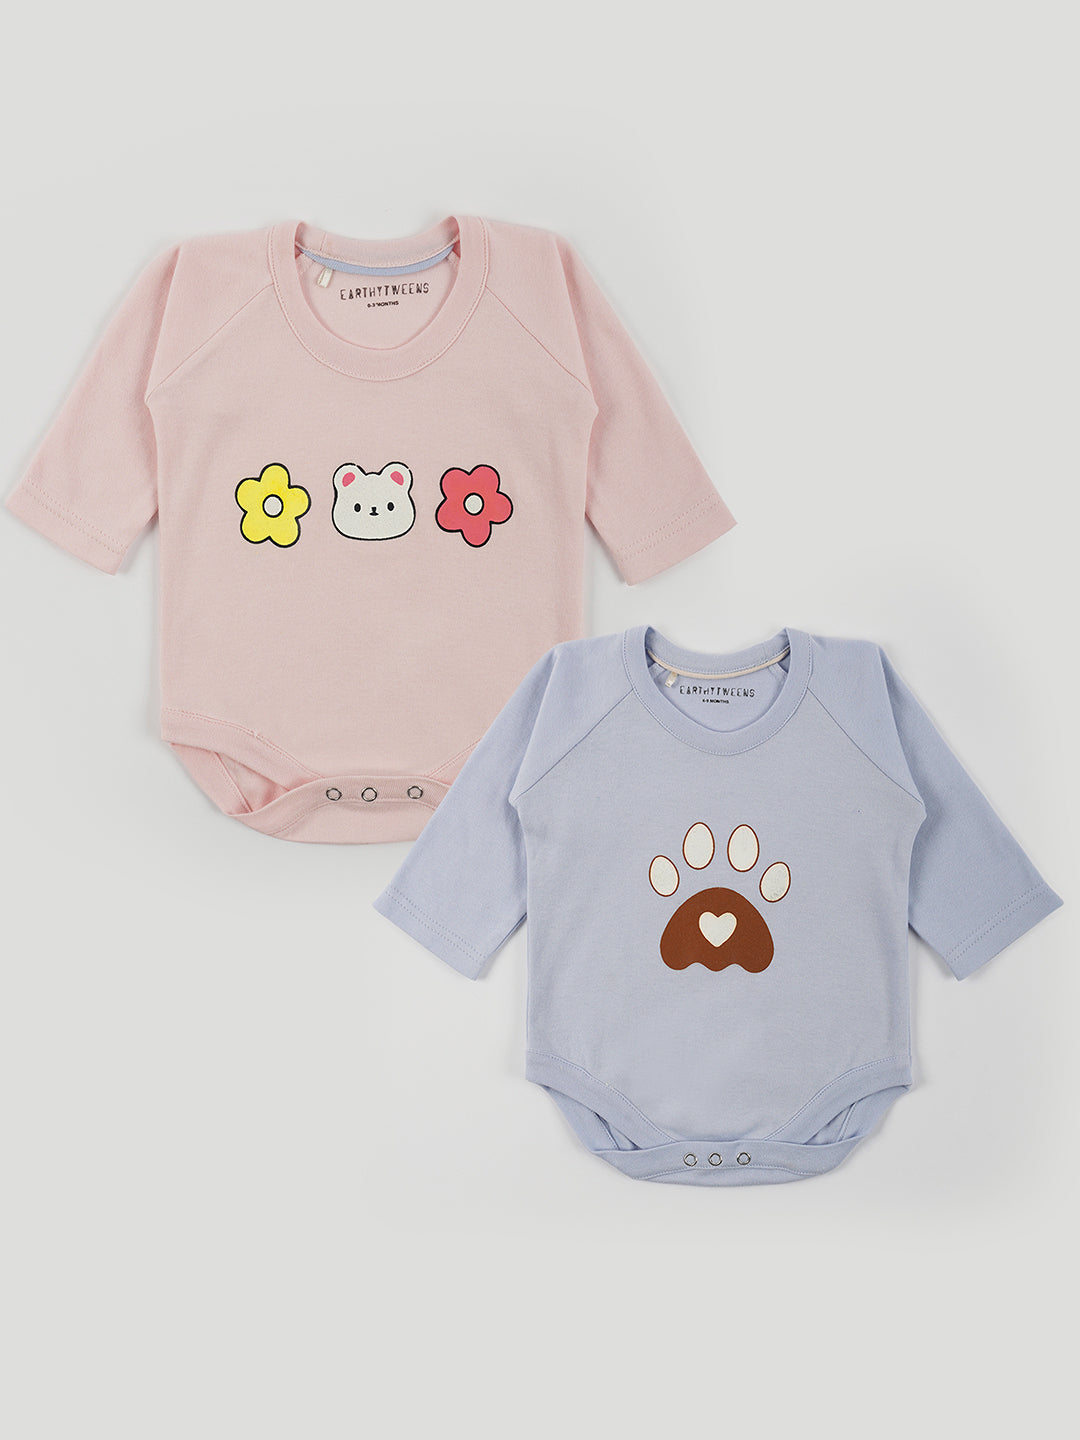 Baby Animal Printed Summer Cotton Jersey Onesie Set